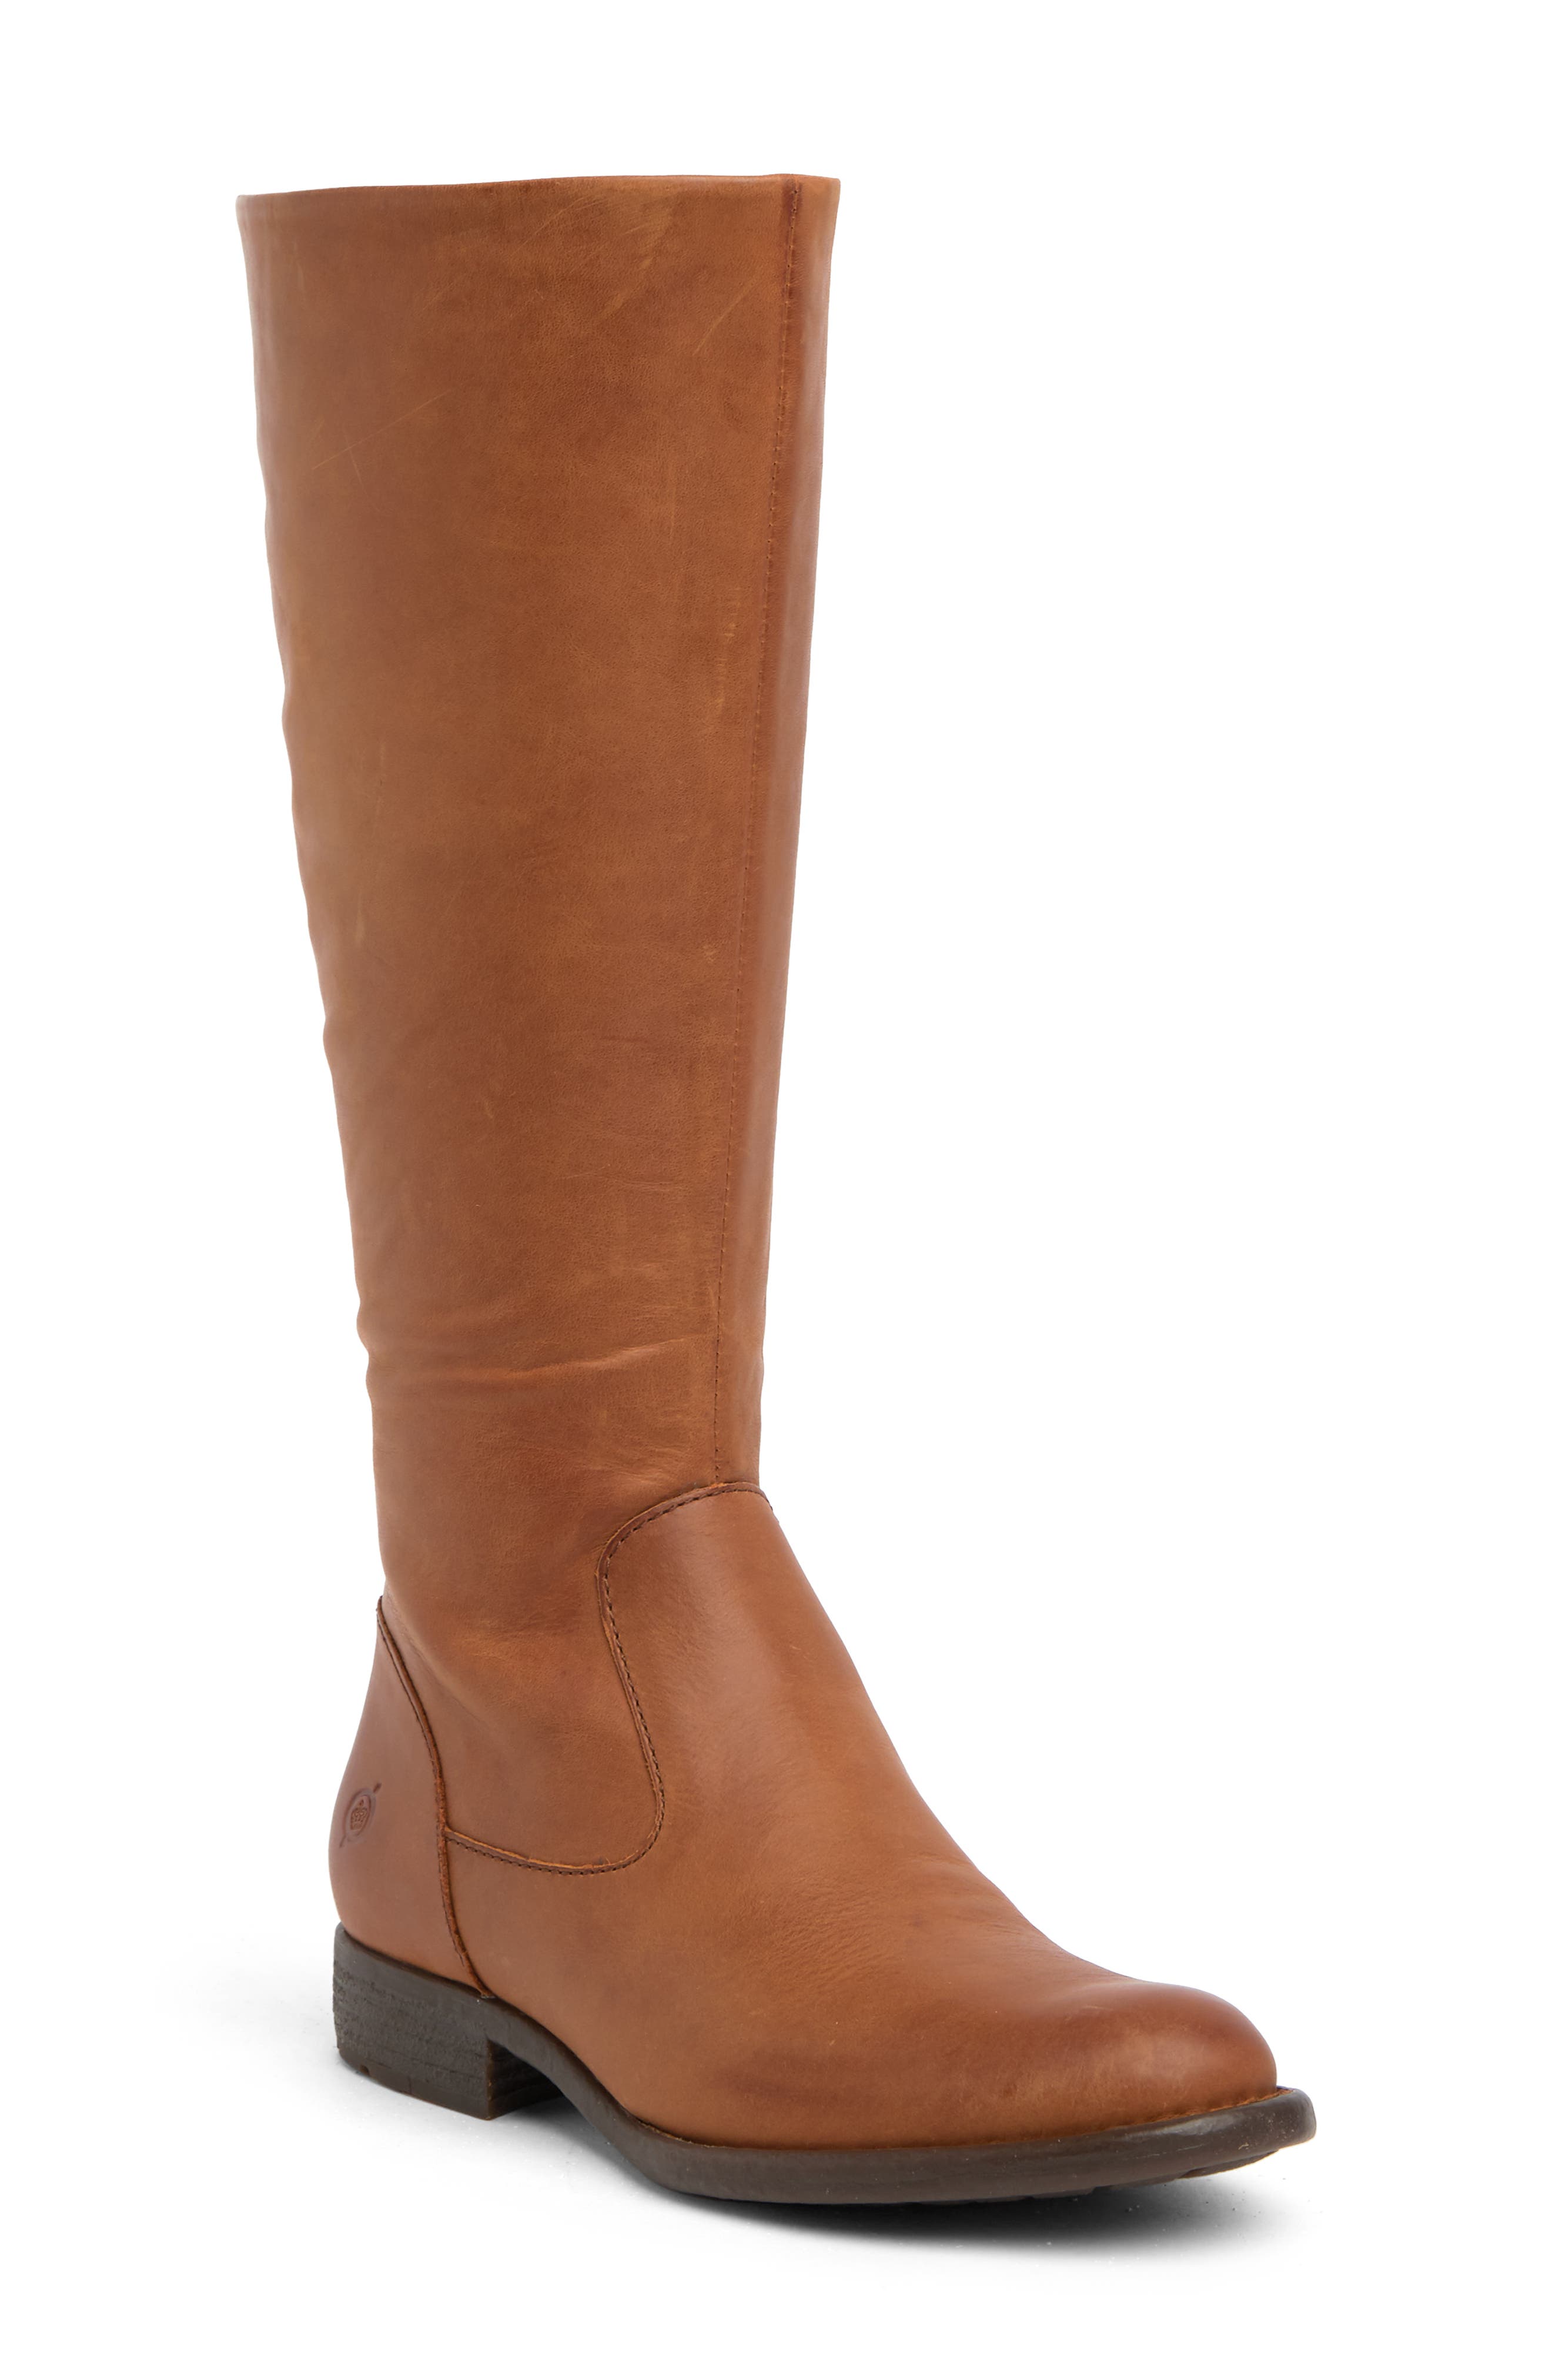 Details about   Women Knee High Block Heel Boots Ladies 12cm Heel Mid Calf Boots Shoes 44 45 D 